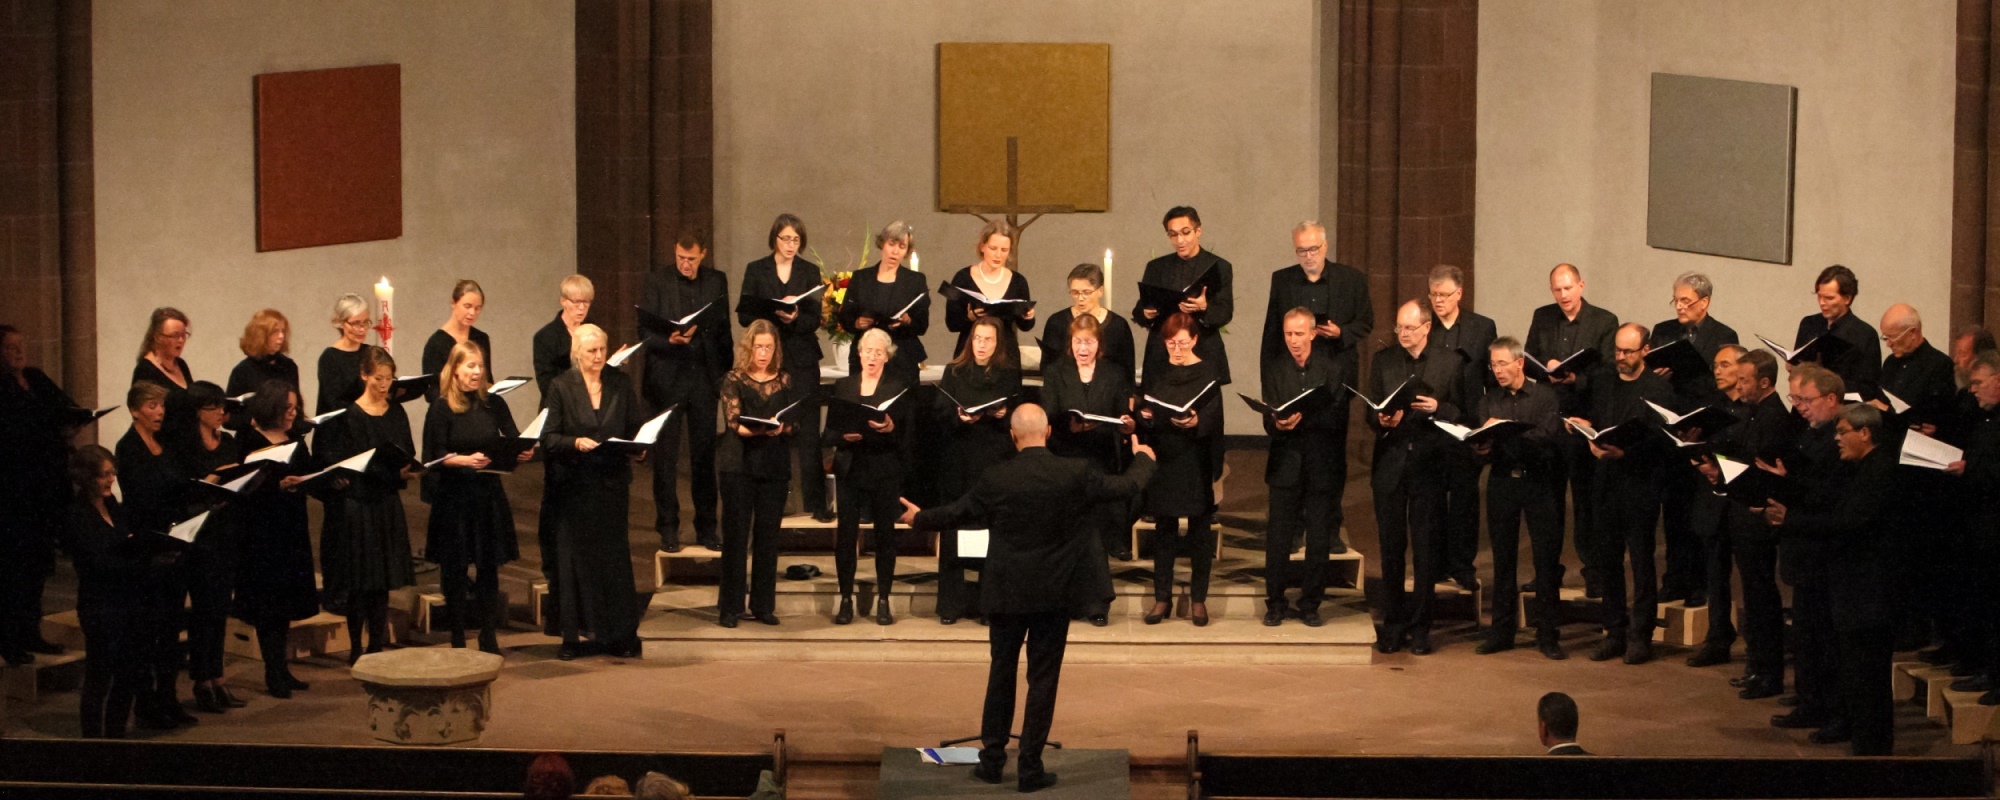 Chorkonzert Kurt-Thomas-Kammerchor in 2018 in der Dreikönigskirche Frankfurt am Main | Leitung: Andreas Köhs